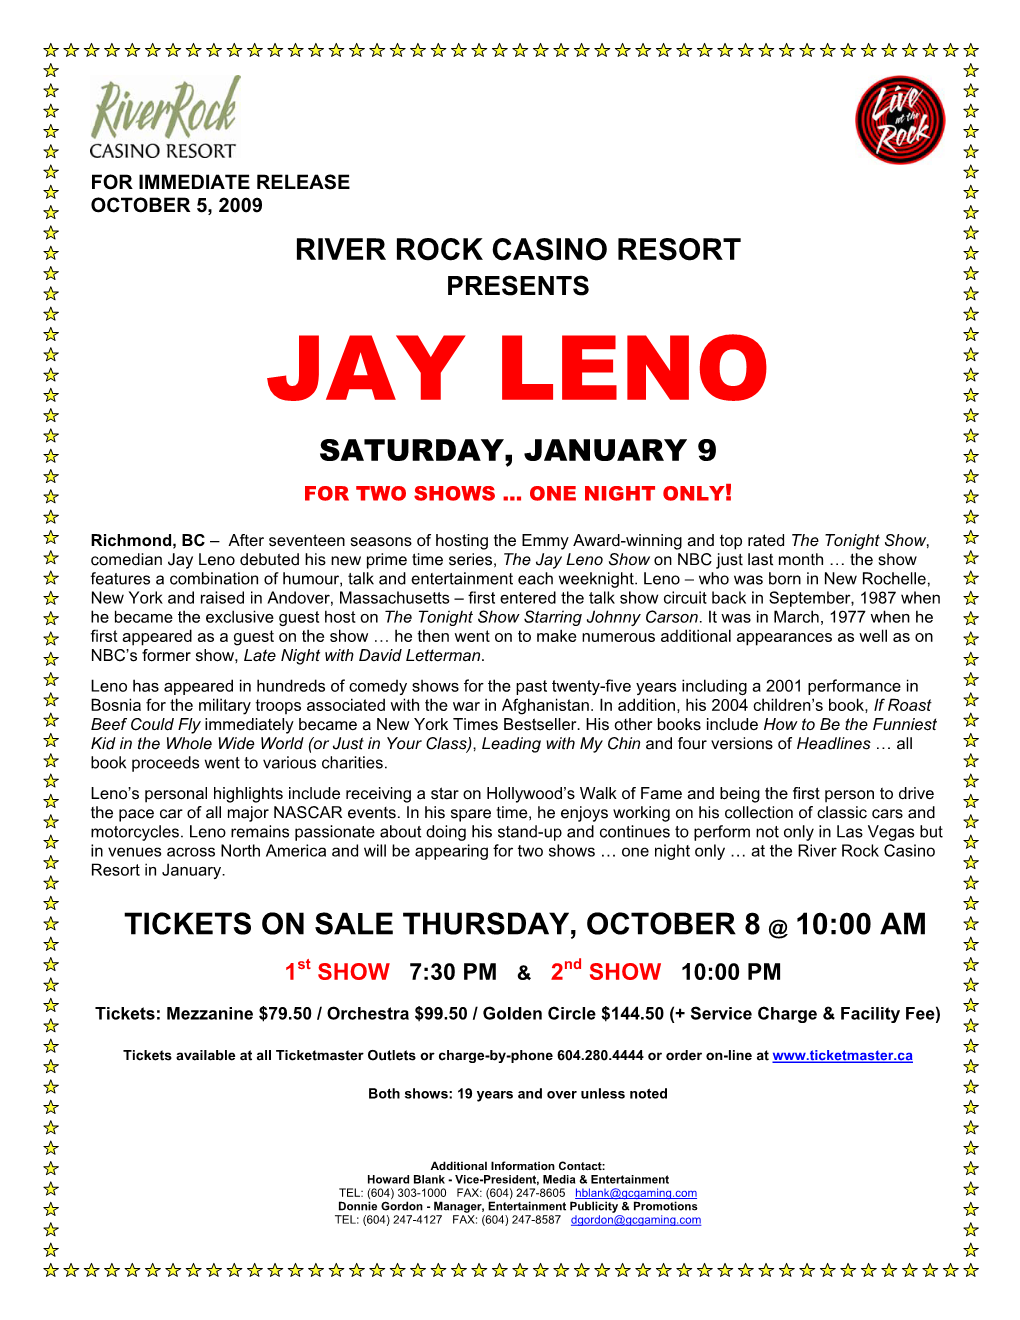 Jay Leno Saturday, January 9